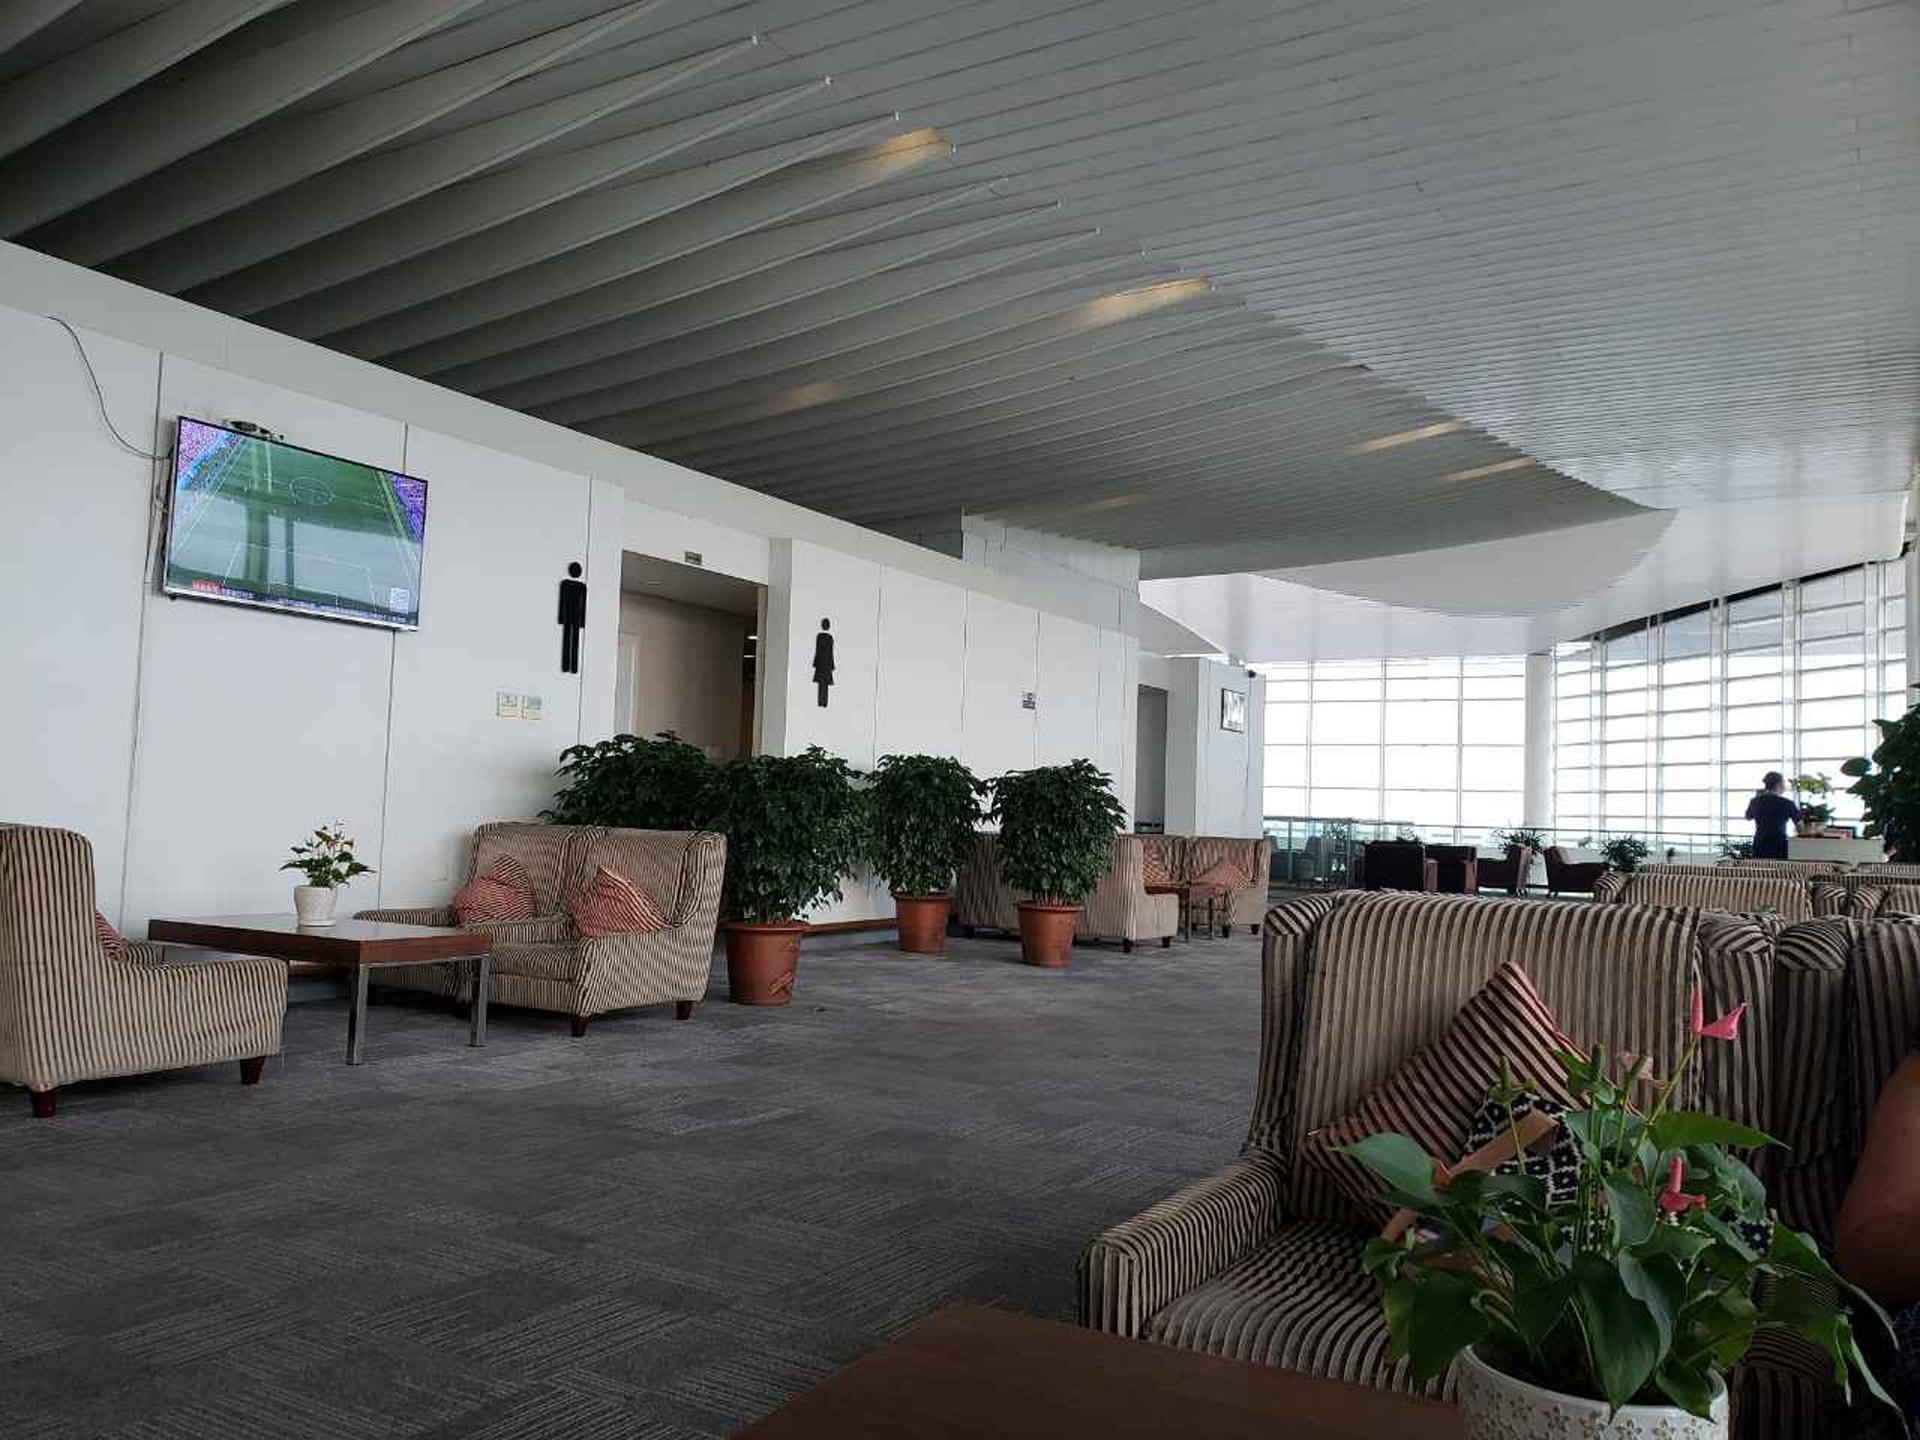 Hangzhou Xiaoshan Airport First Class Lounge image 7 of 8